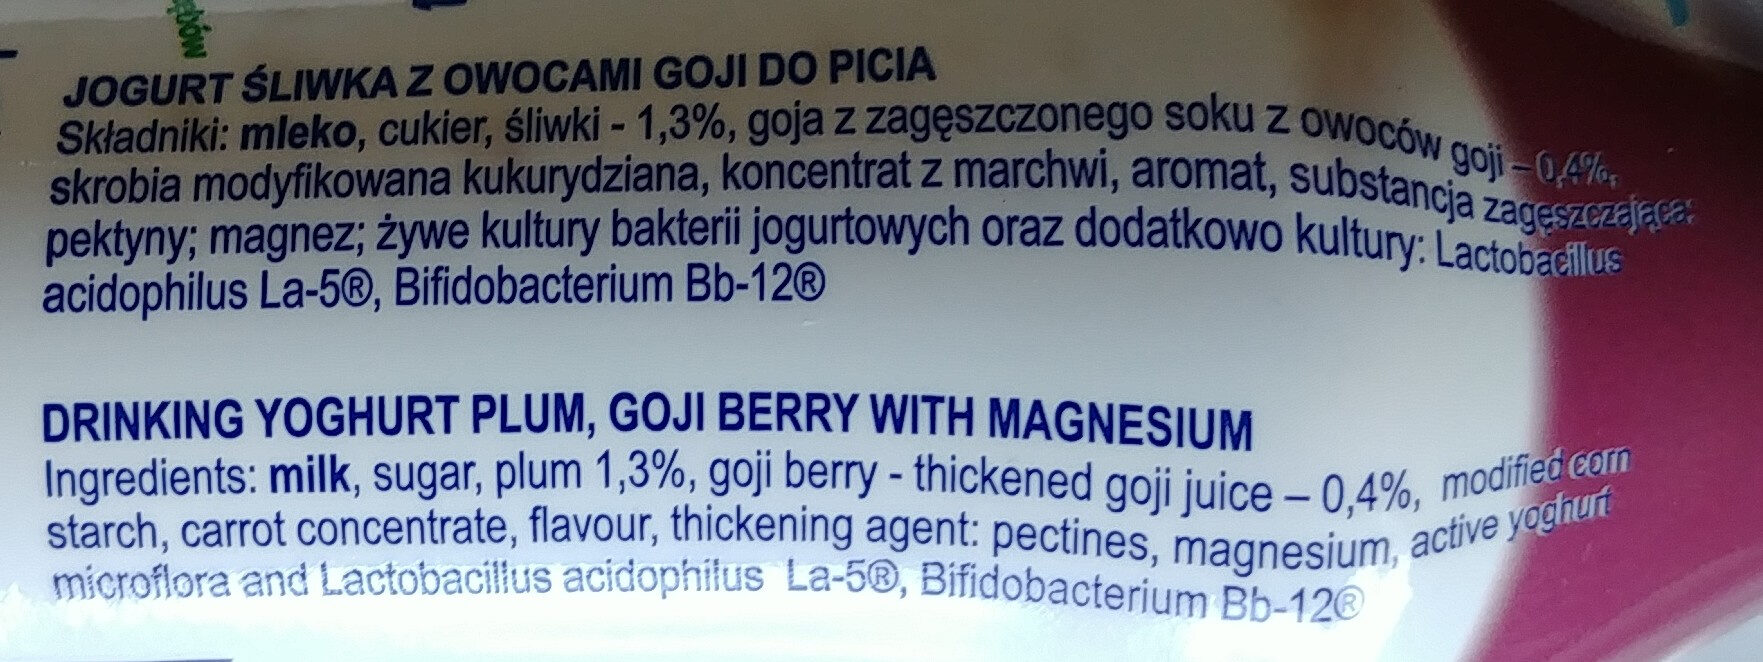 Jogurt śliwka z owocami goji do picia - Ingredients - pl